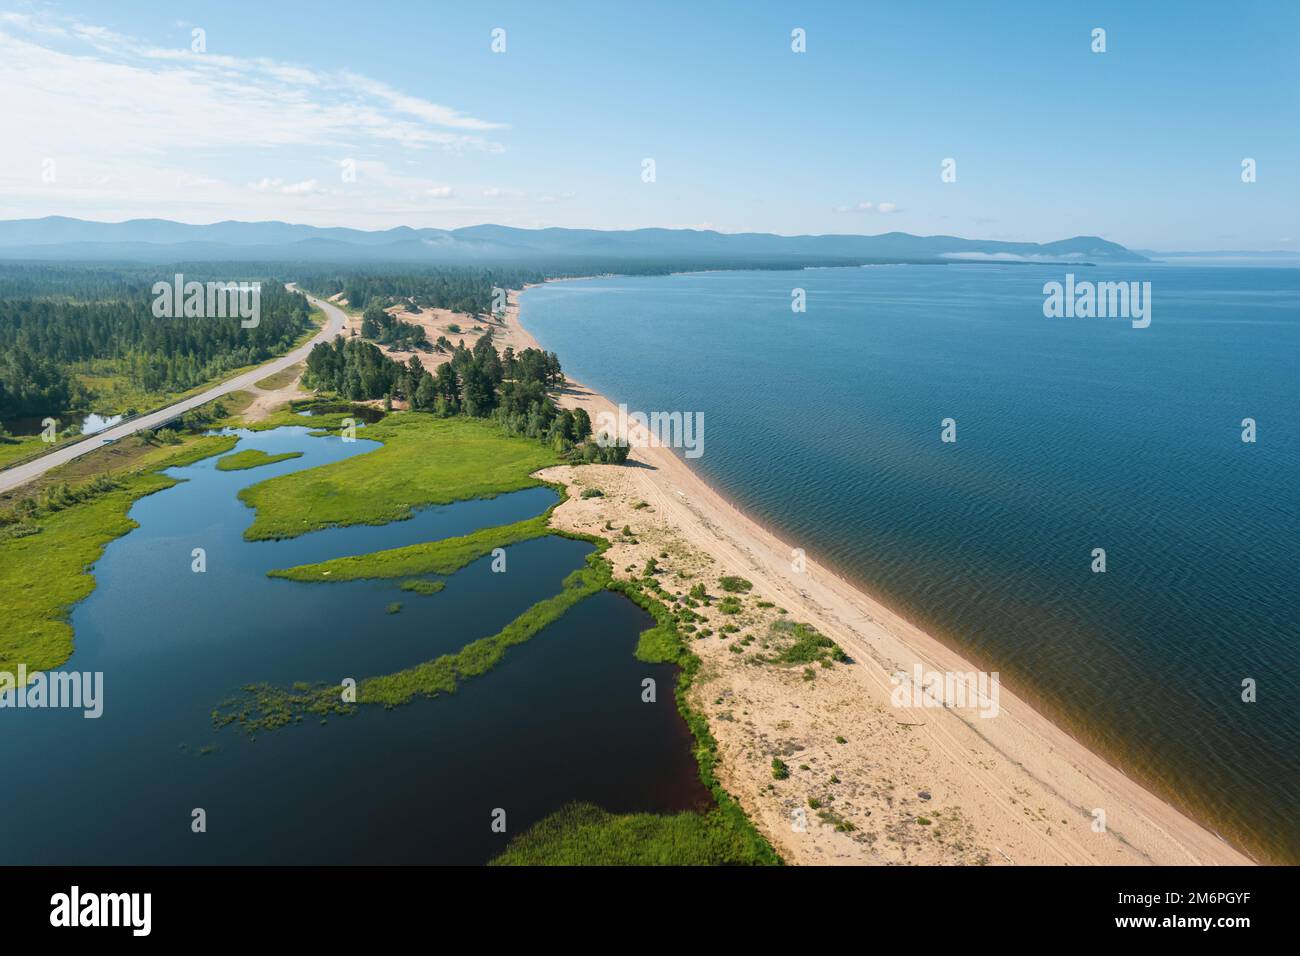 Die Sommerbilder des Baikalsees sind ein Riftsee im Süden Sibiriens, Russland. Baikalsee Sommer Landschaft Blick. Drohnen Stockfoto